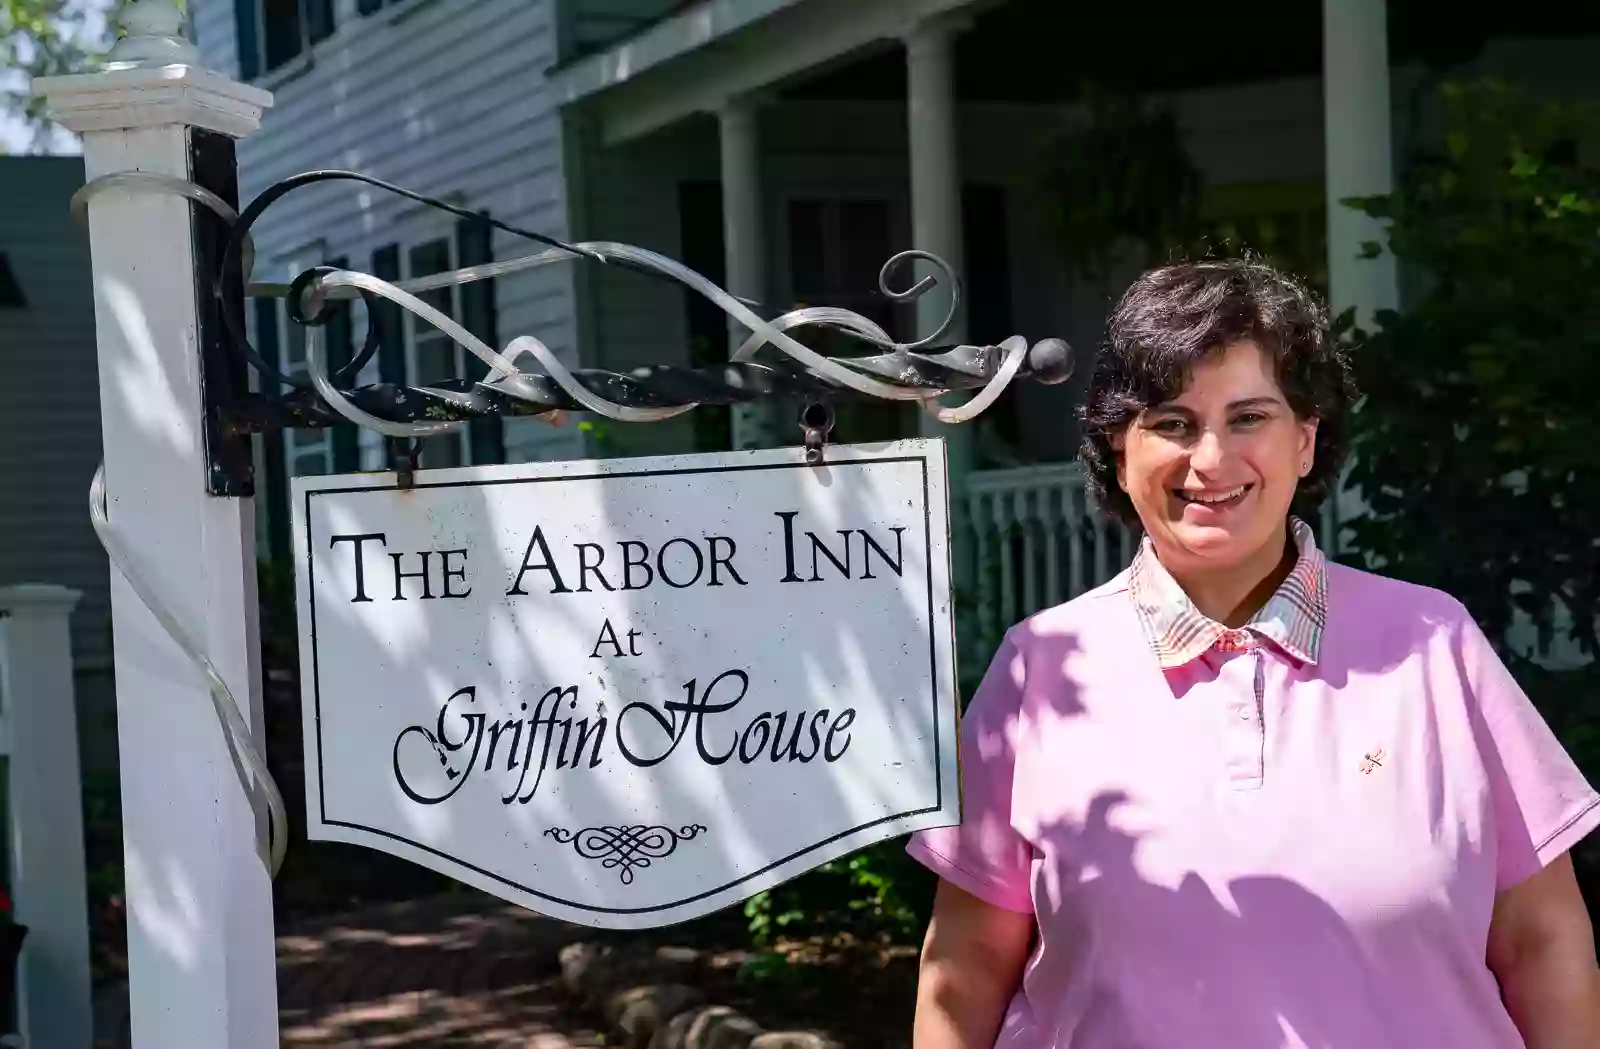 The Arbor Inn of Clinton